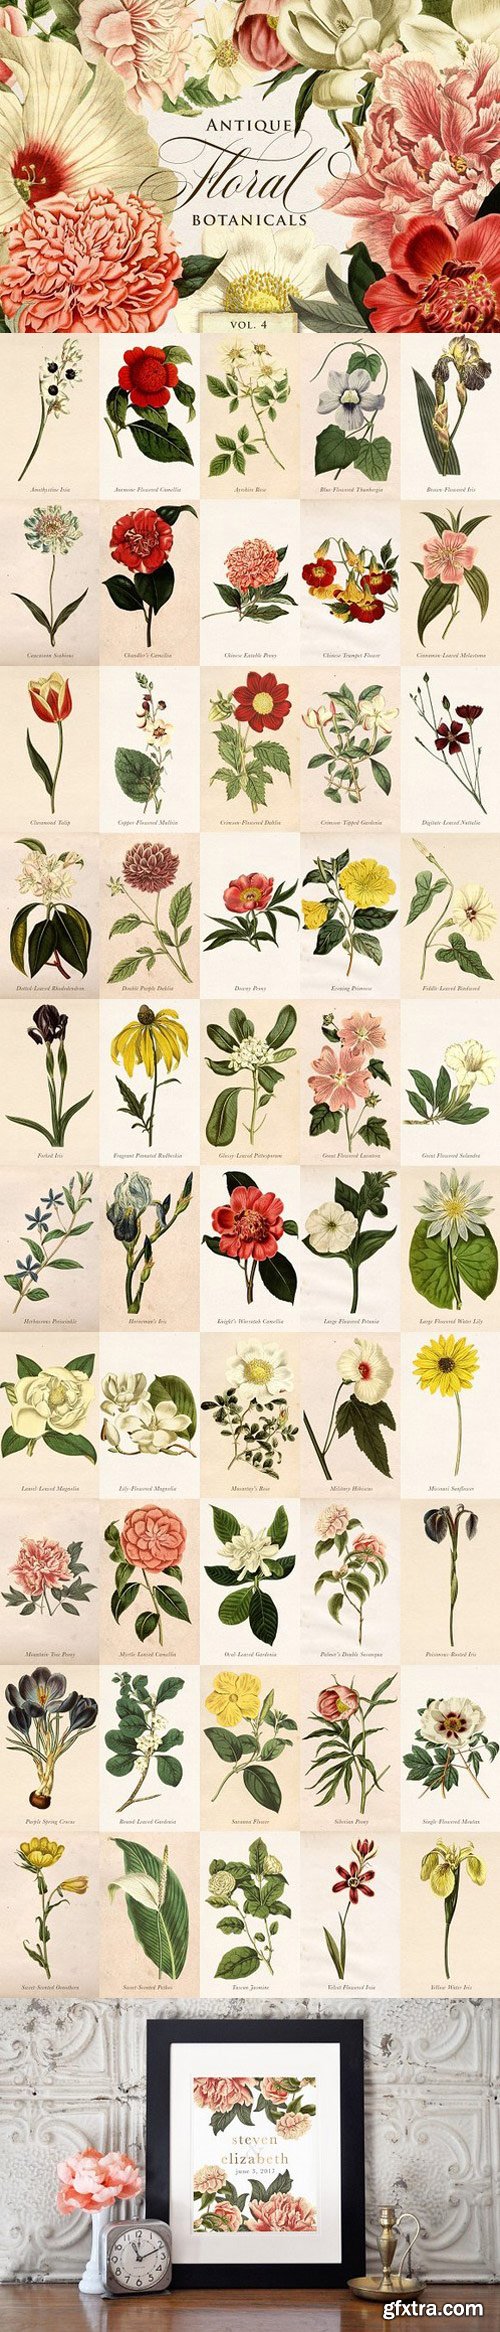 CM - Antique Floral Botanical Graphics 4 1711942